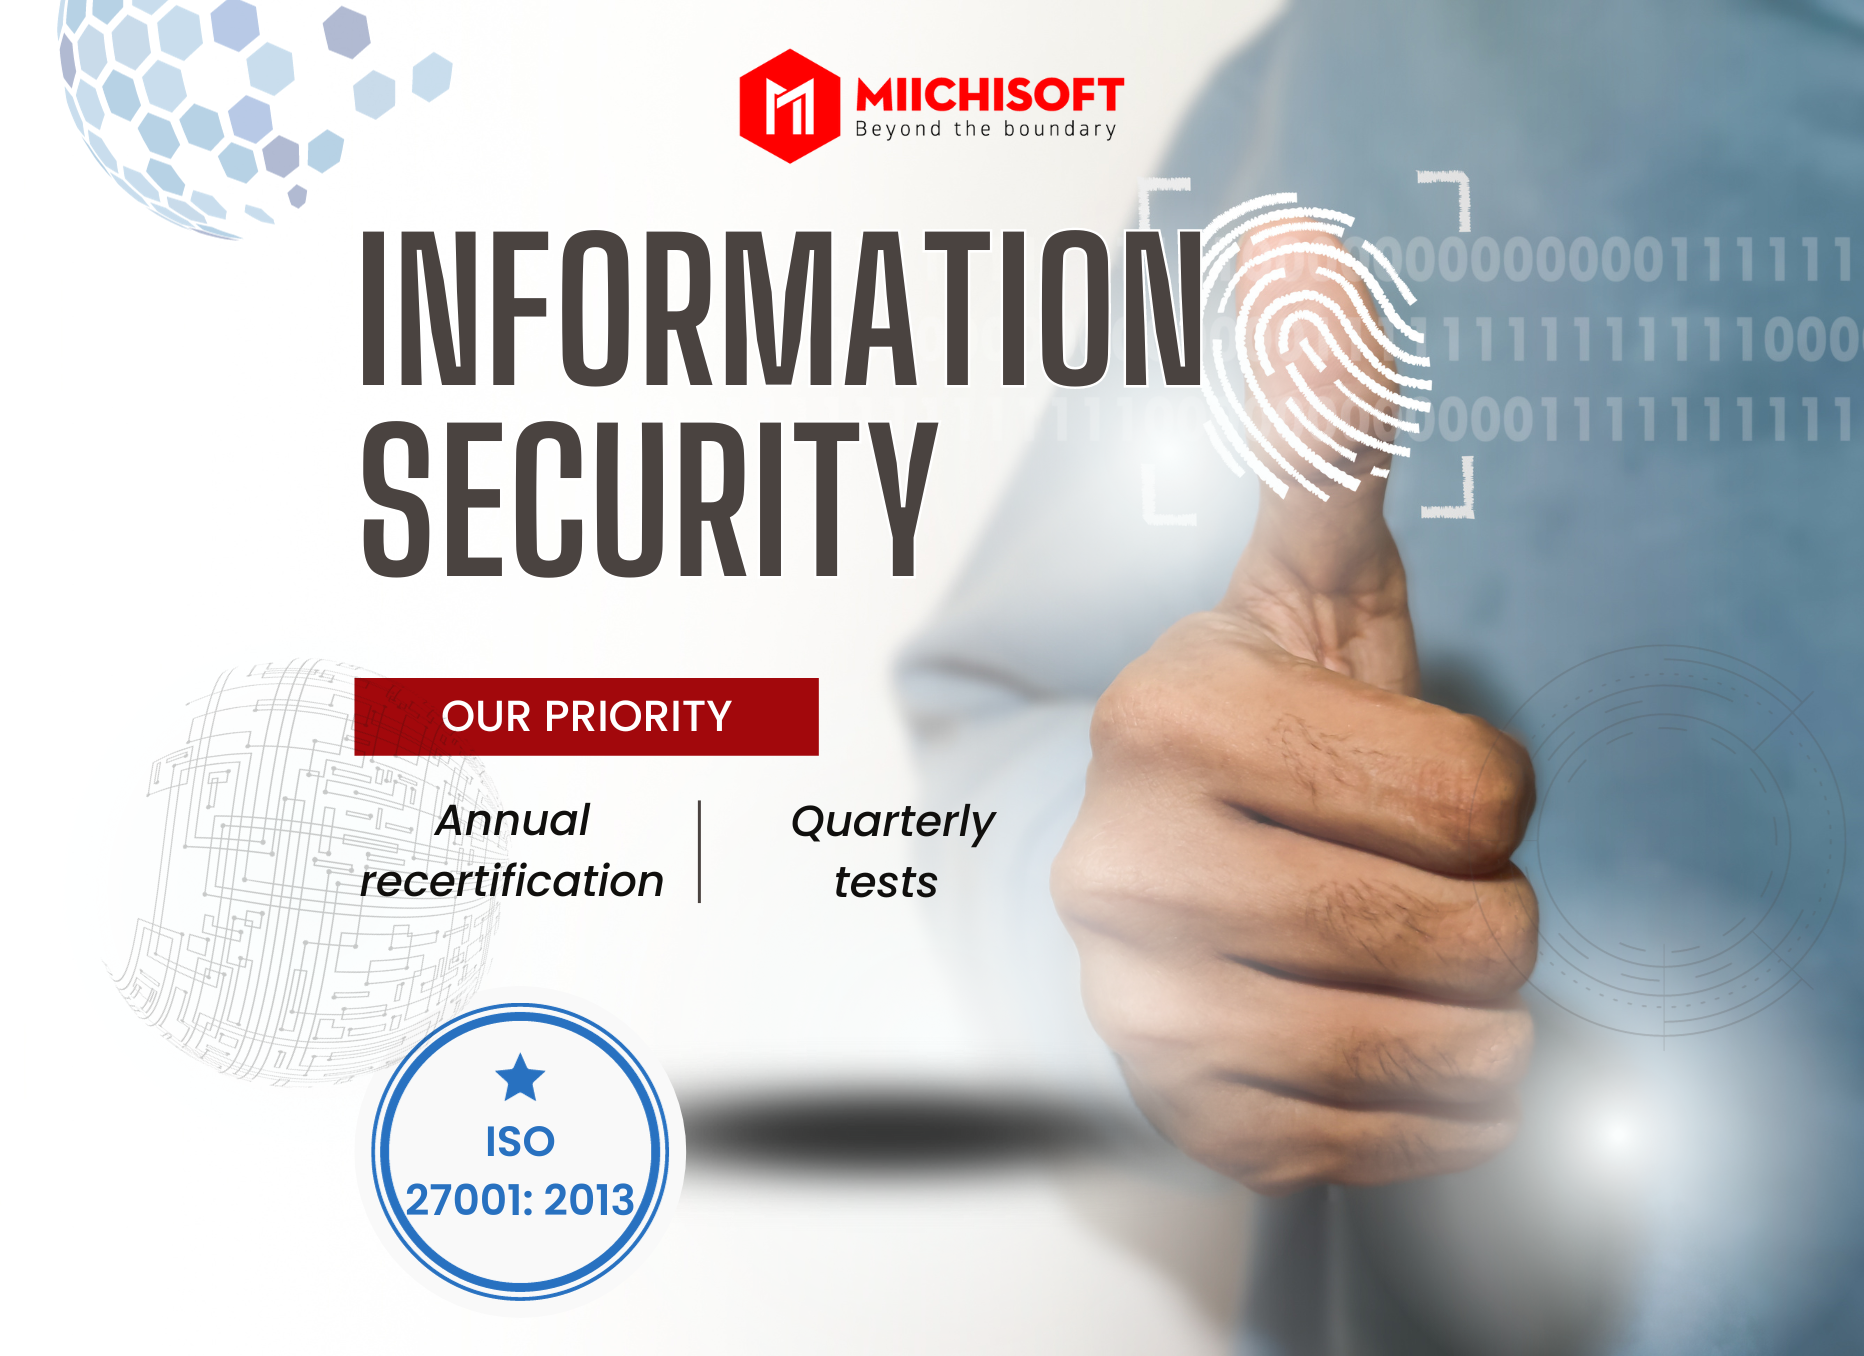 Miichisoftの情報セキュリティ管理